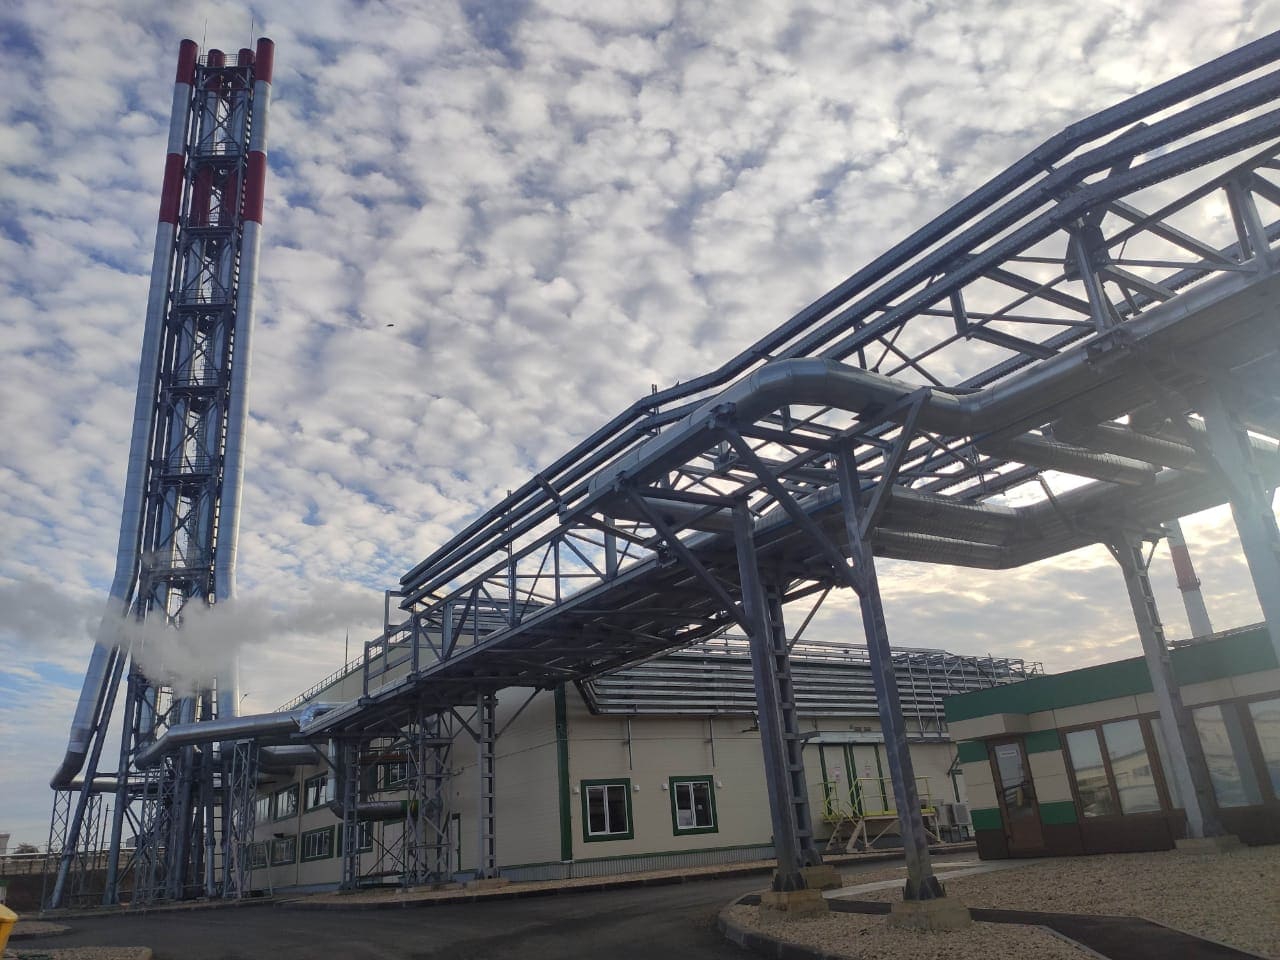 Ввод в эксплуатацию Энергоцентра на 24,9 МВт для ООО "Каргилл" в городе Ефремове Тульской области